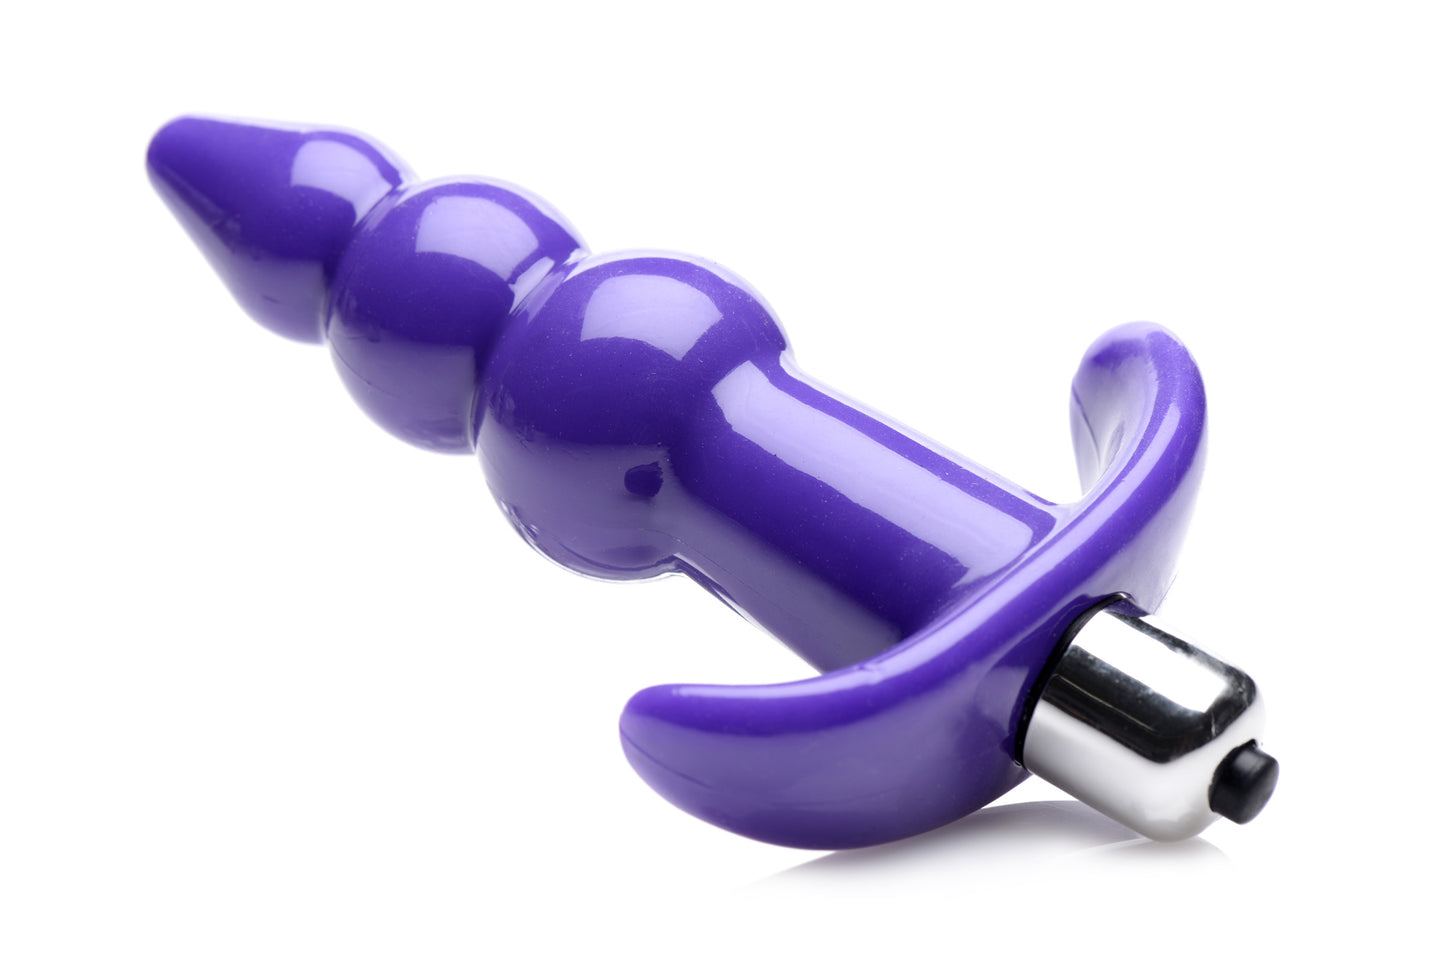 Ribbed Vibrating Butt Plug - Purple